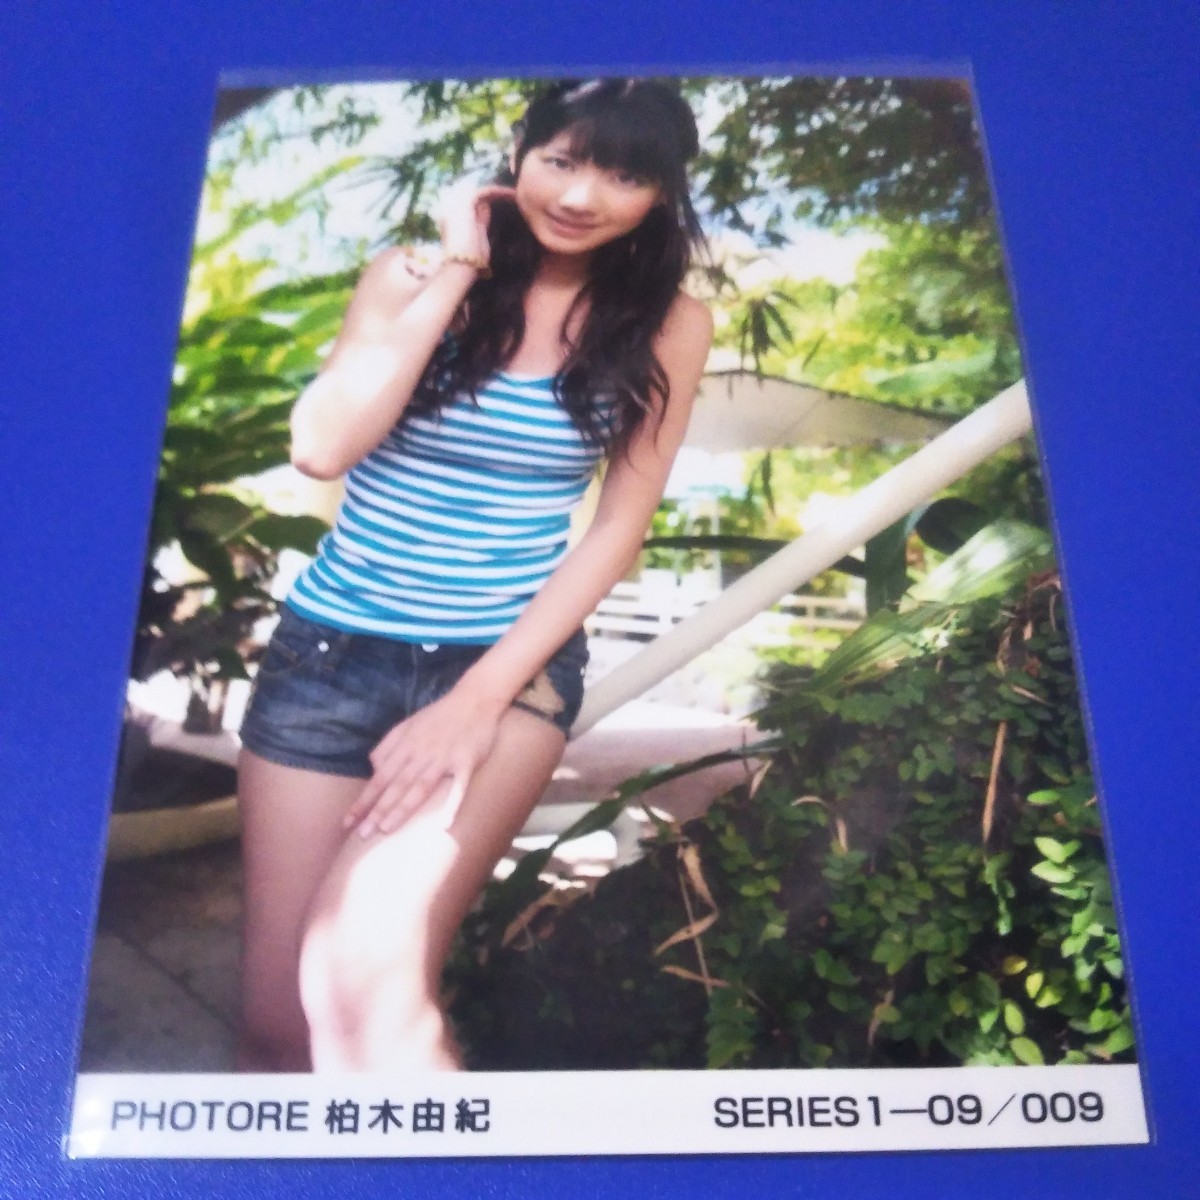 「送料無料」同梱可能　AKB48 柏木由紀PHOTORE 水着 009生写真 1スタ_画像1